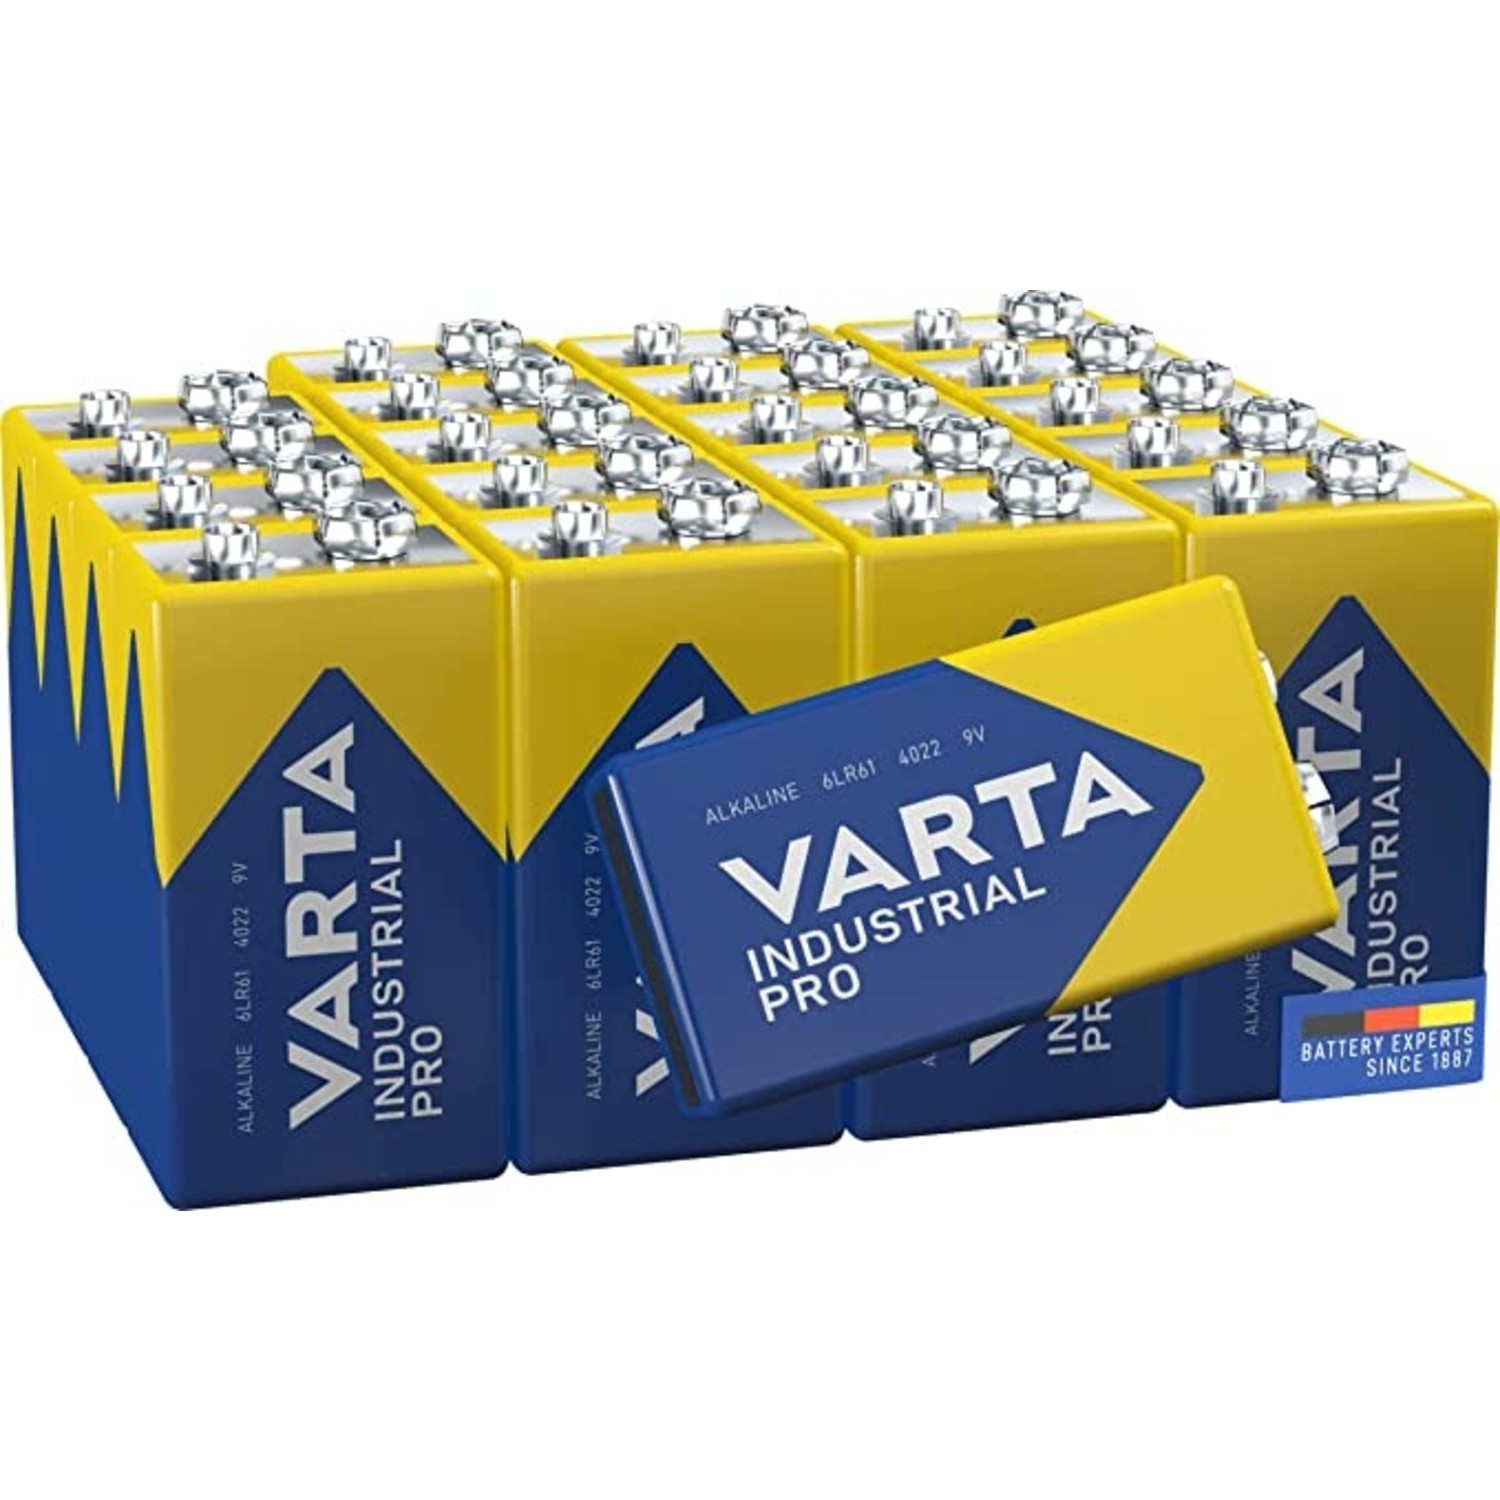 Convergeren ga winkelen kruis Varta Industrial pro 9V batterijen - Batterijenstunter.nl